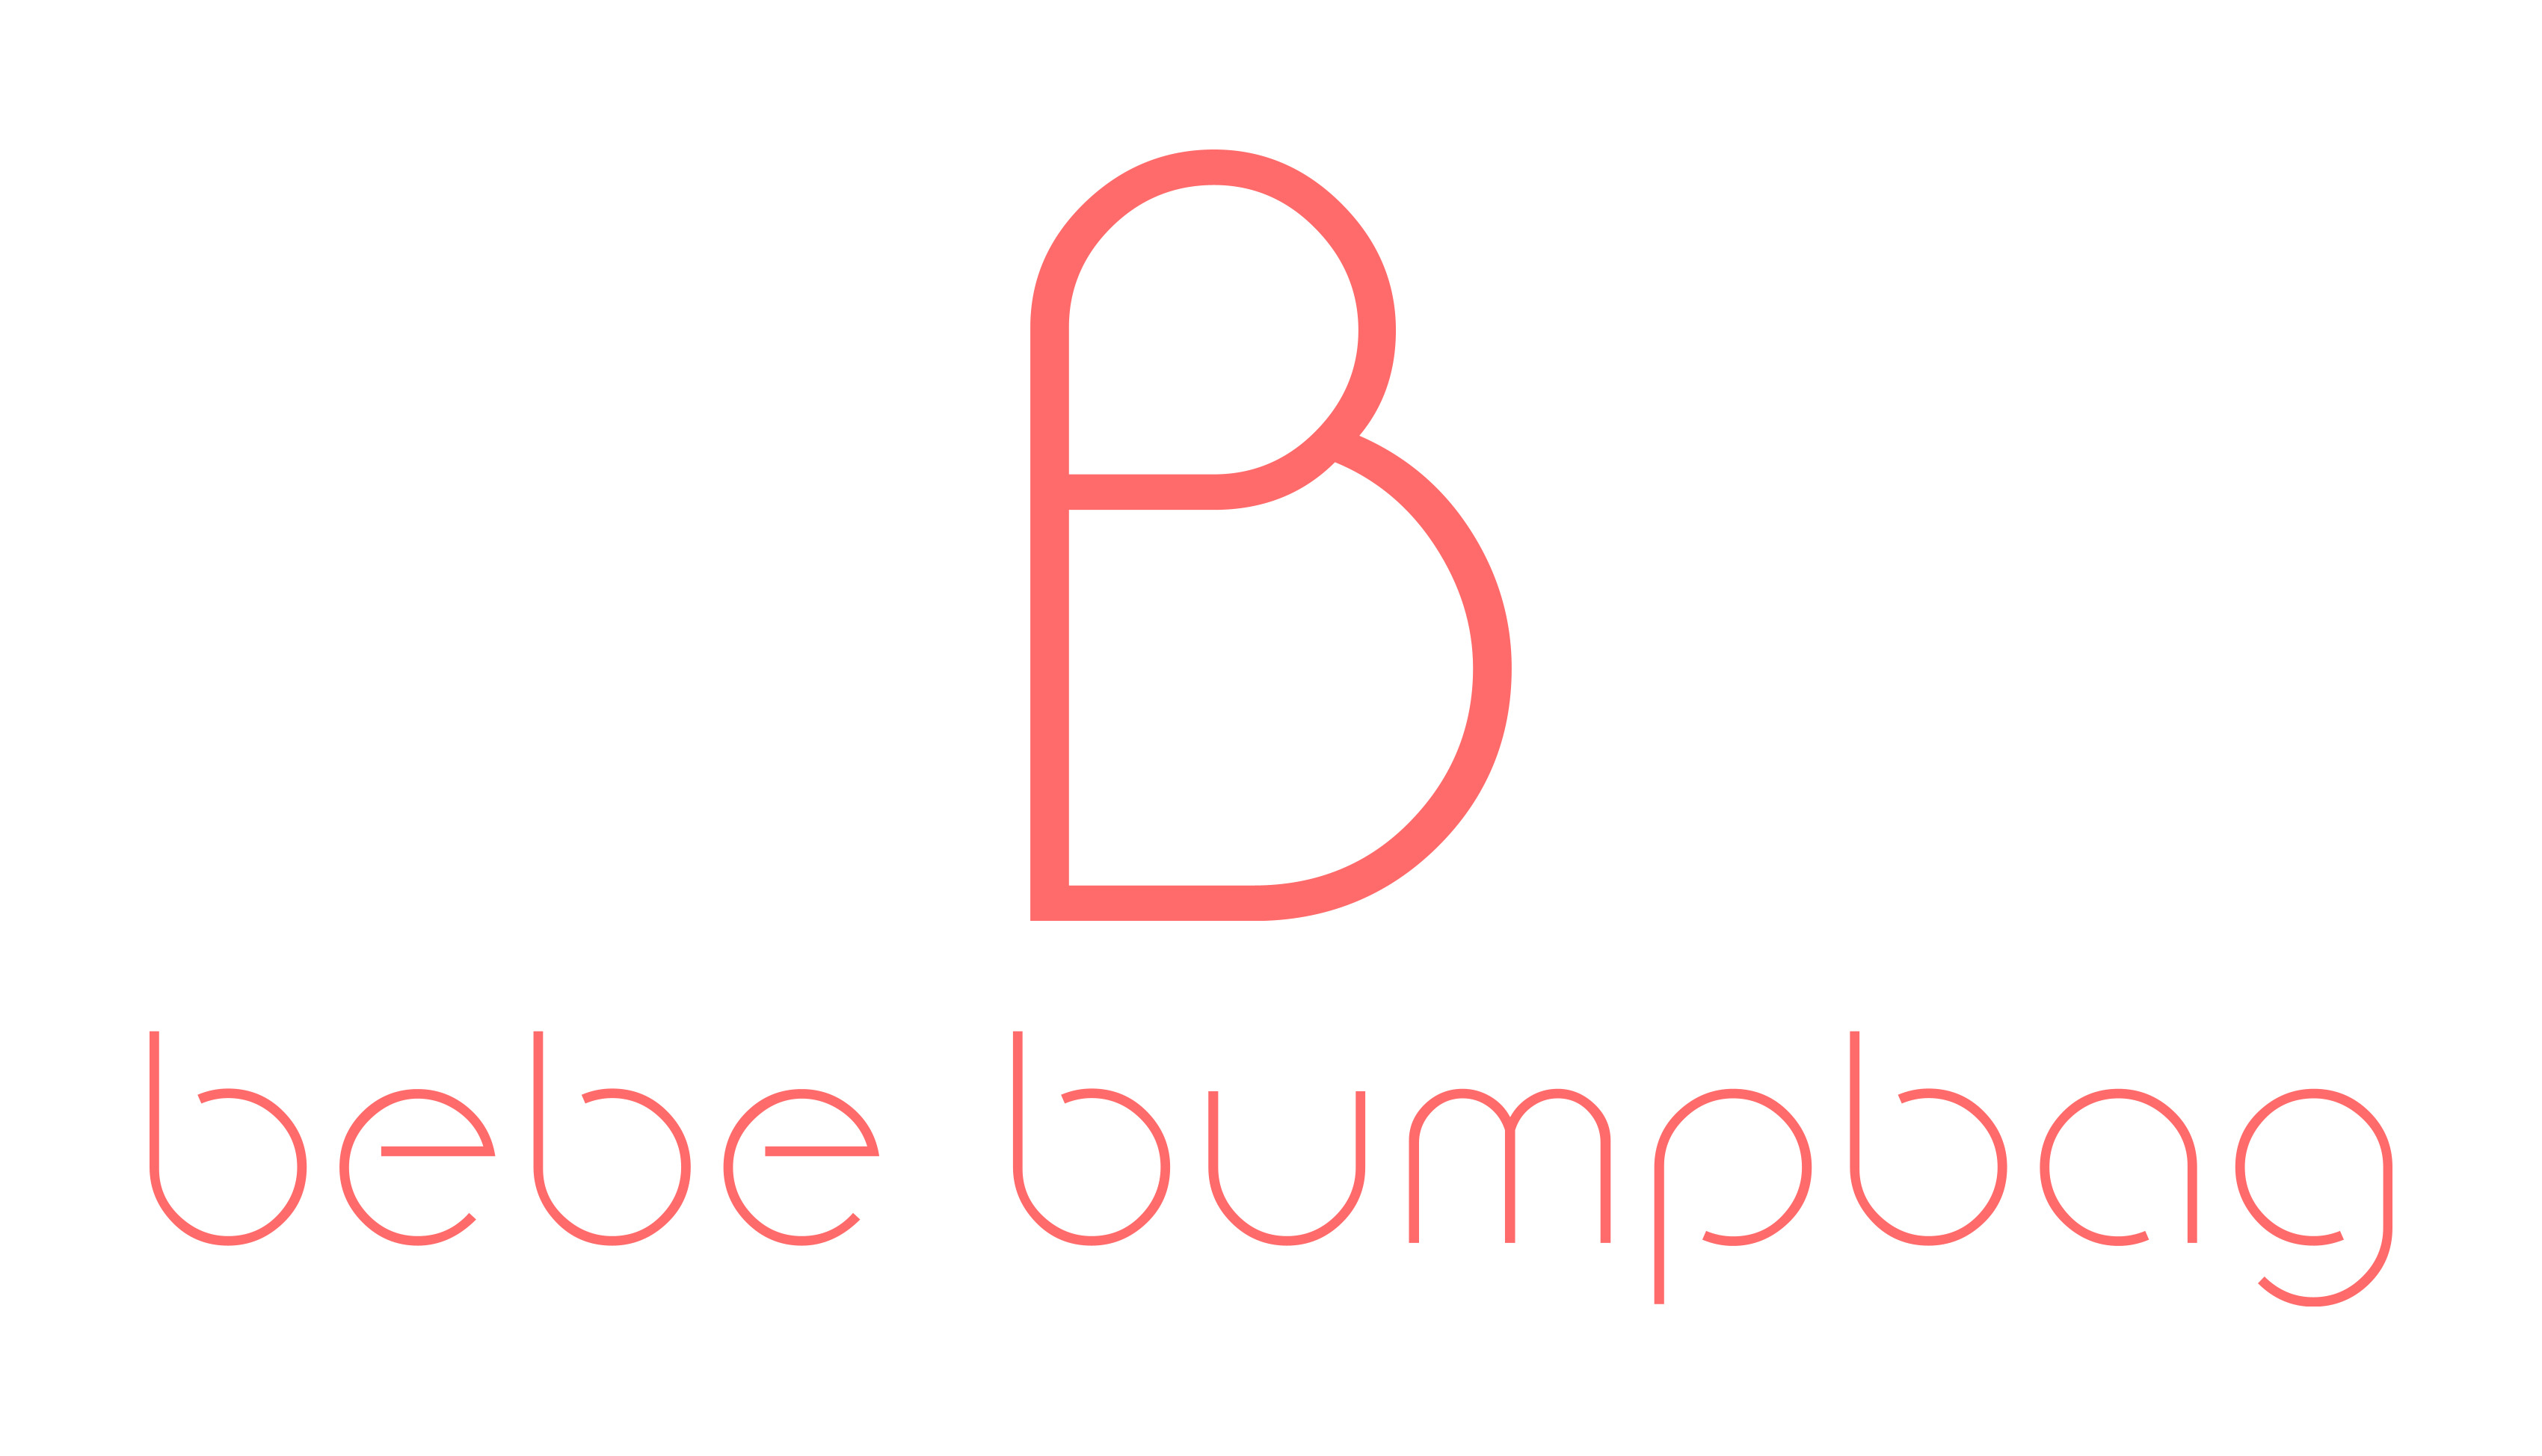 Bebebumpbag's logo